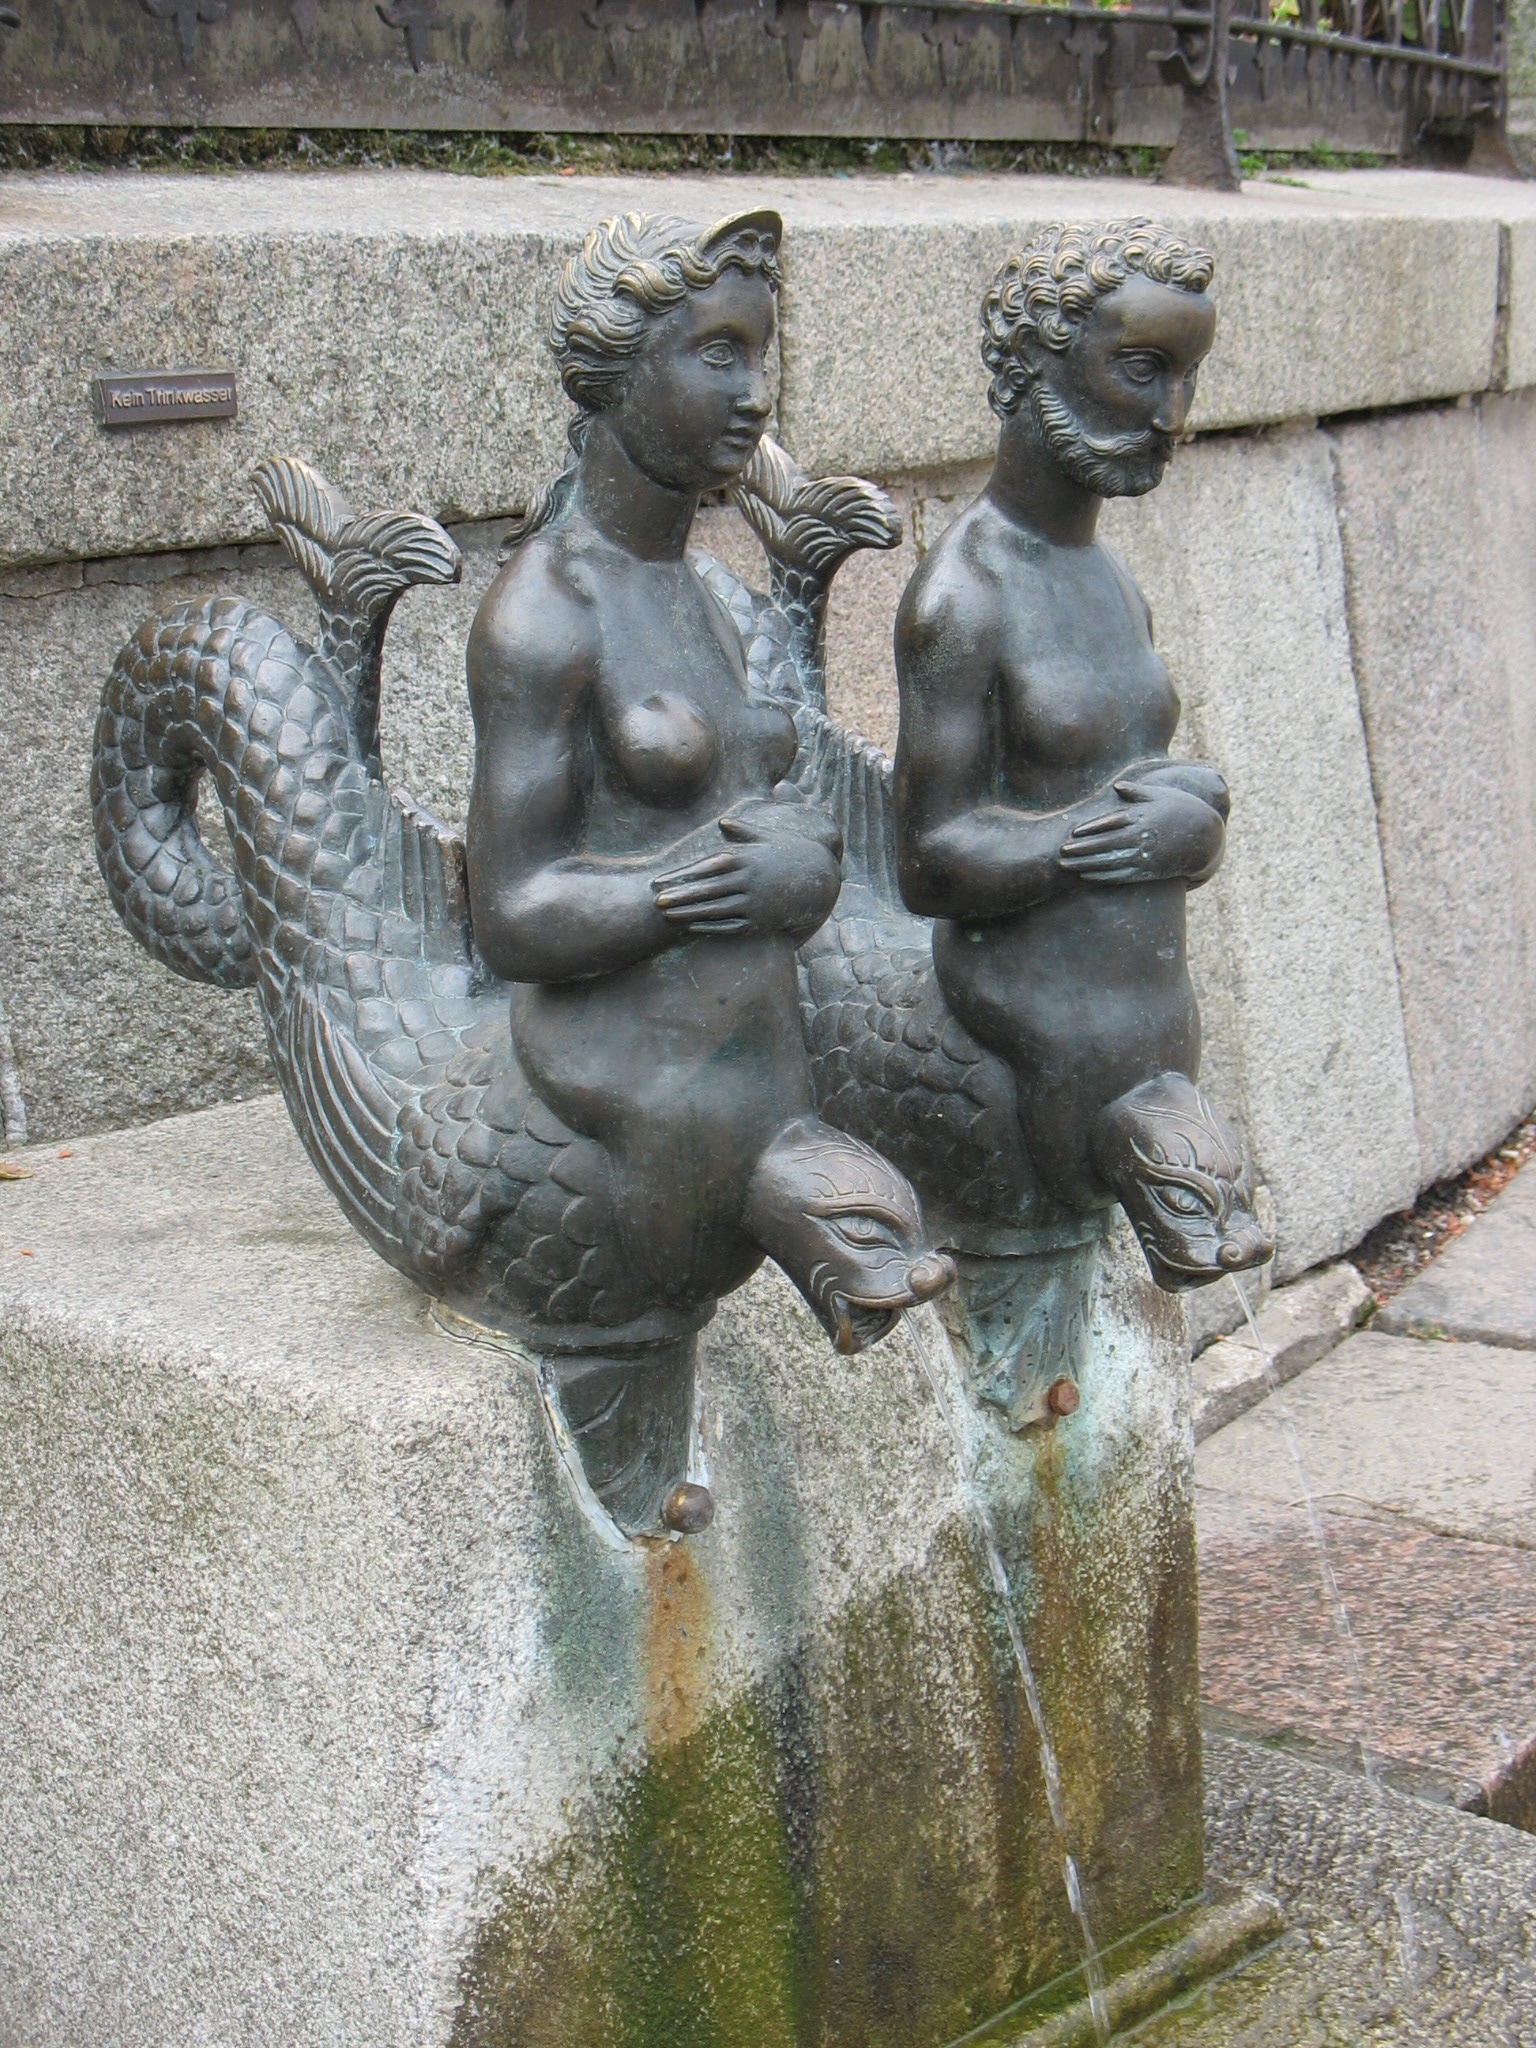 mermaid and merman statues